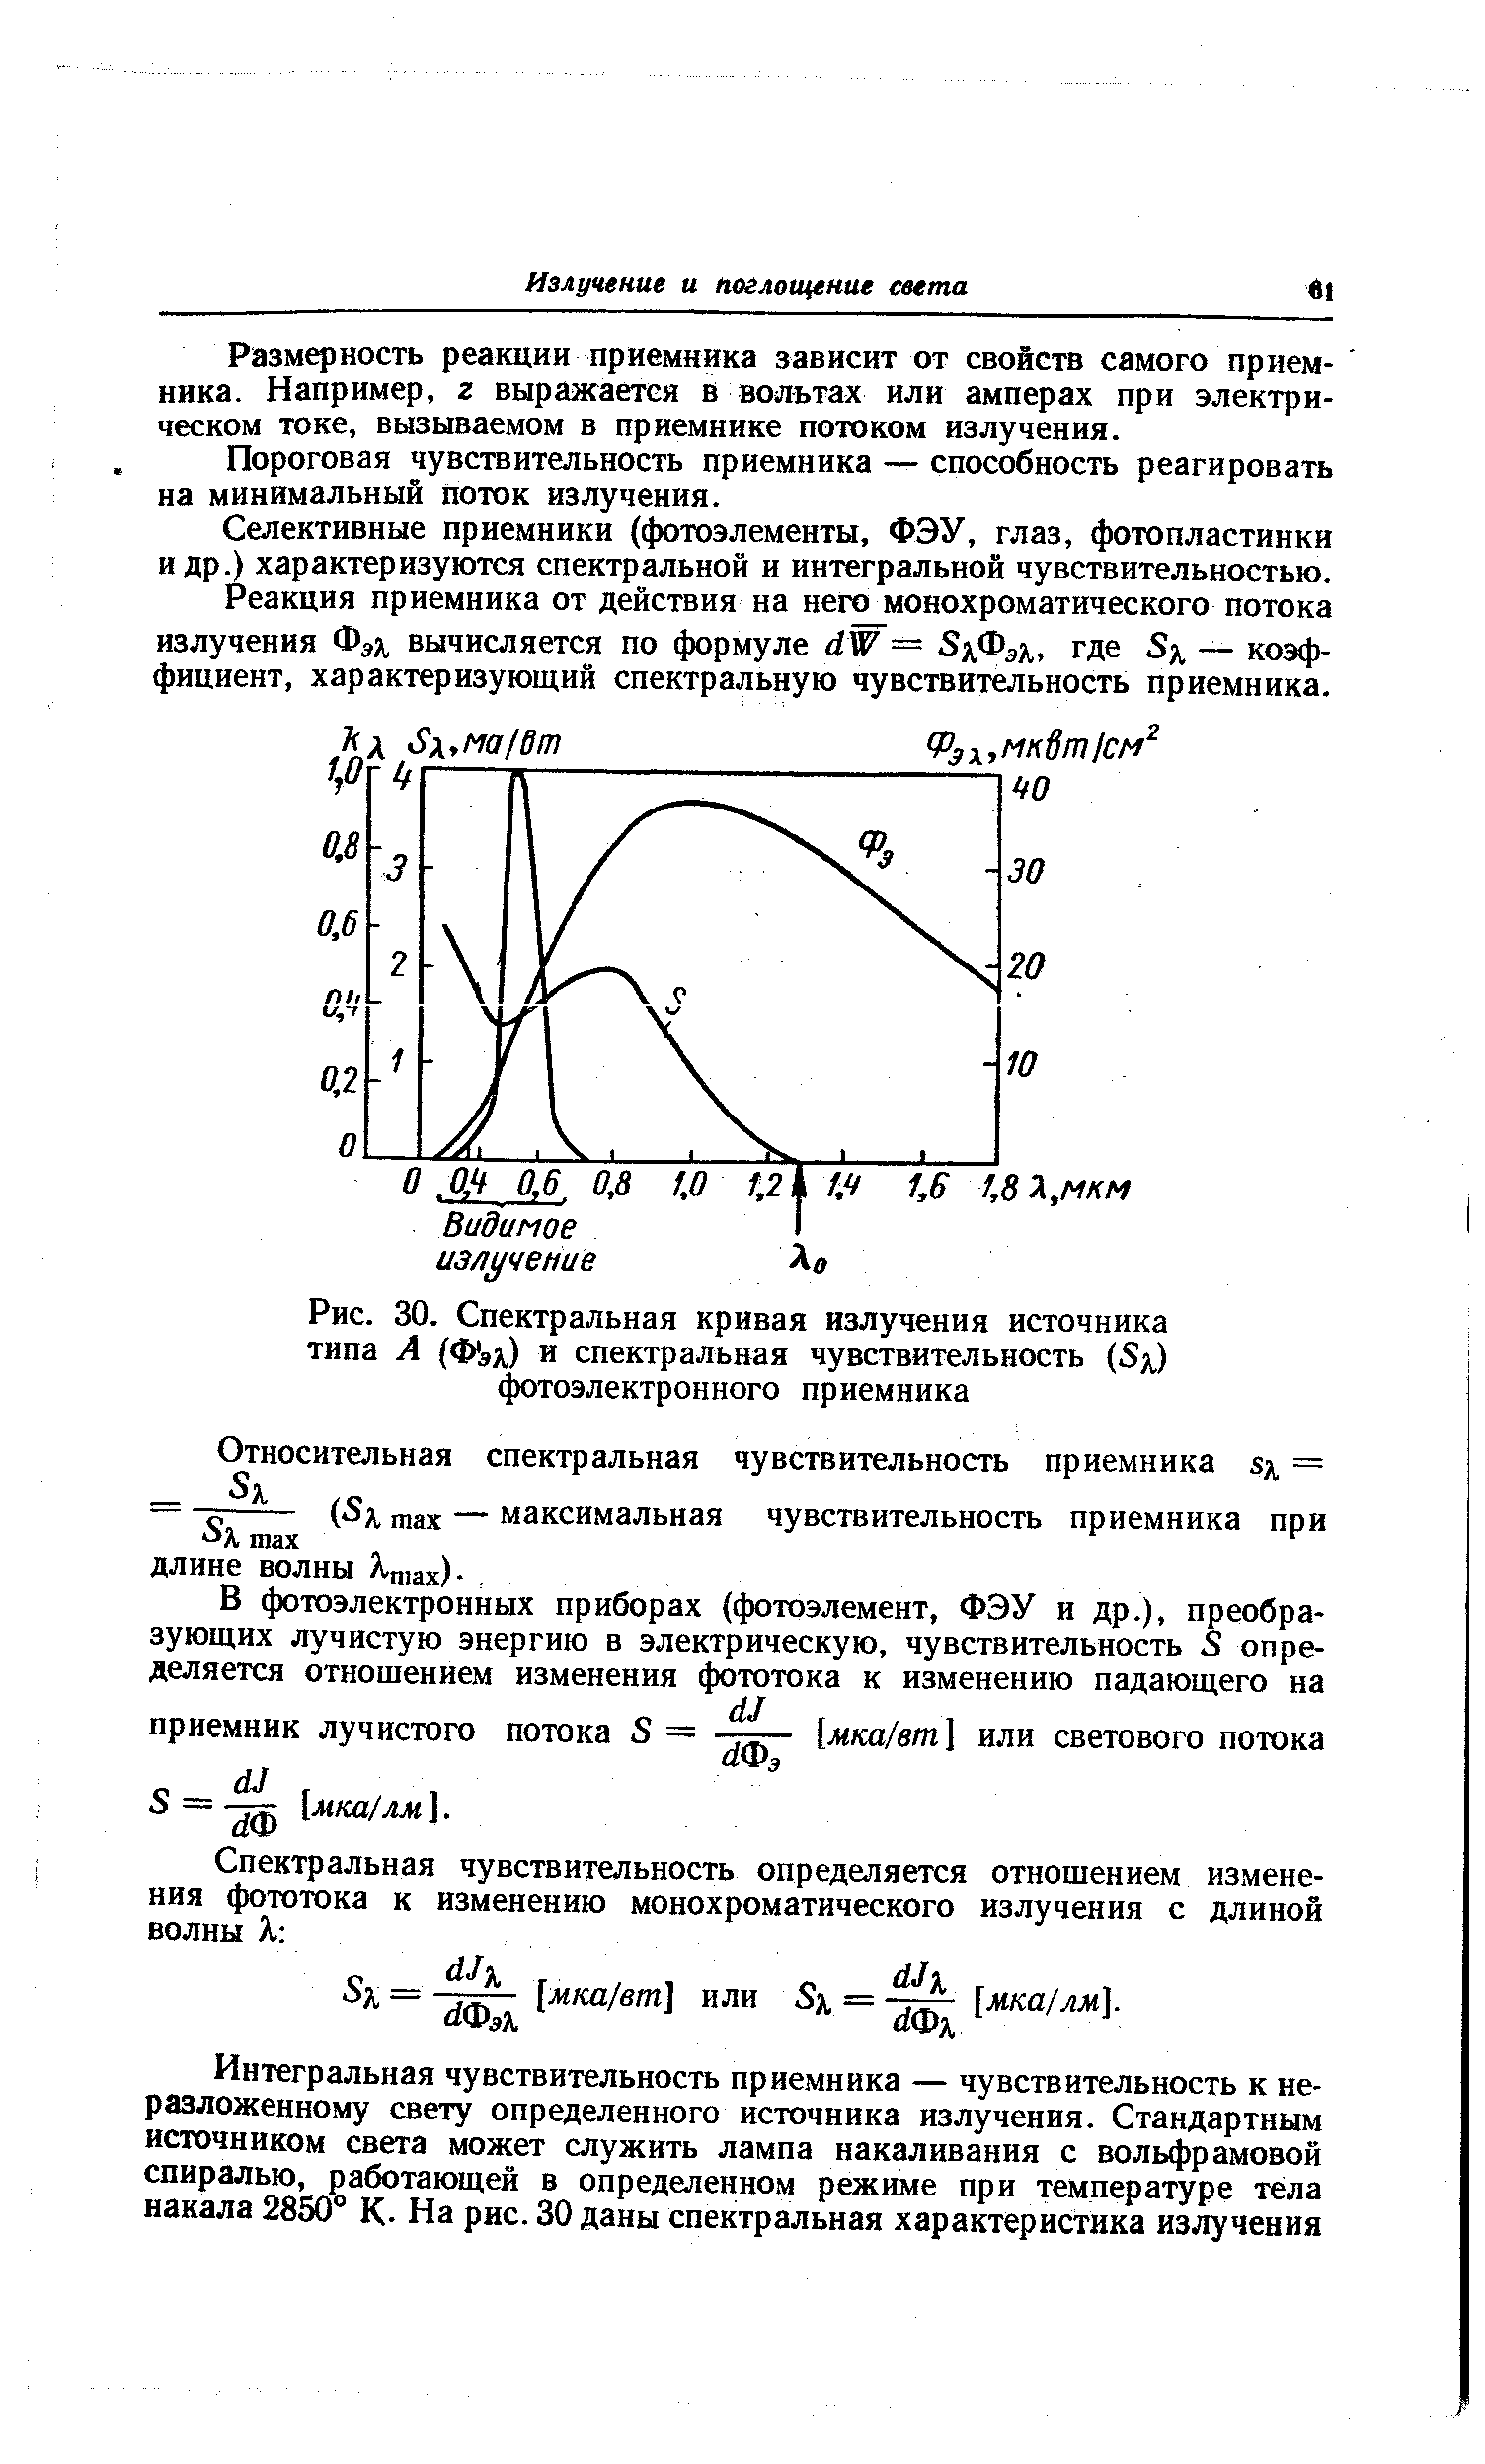 Рис. 30. Спектральная кривая излучения источника типа А (Фах) и спектральная чувствительность (Sx) 4ютоэлектронного приемника
